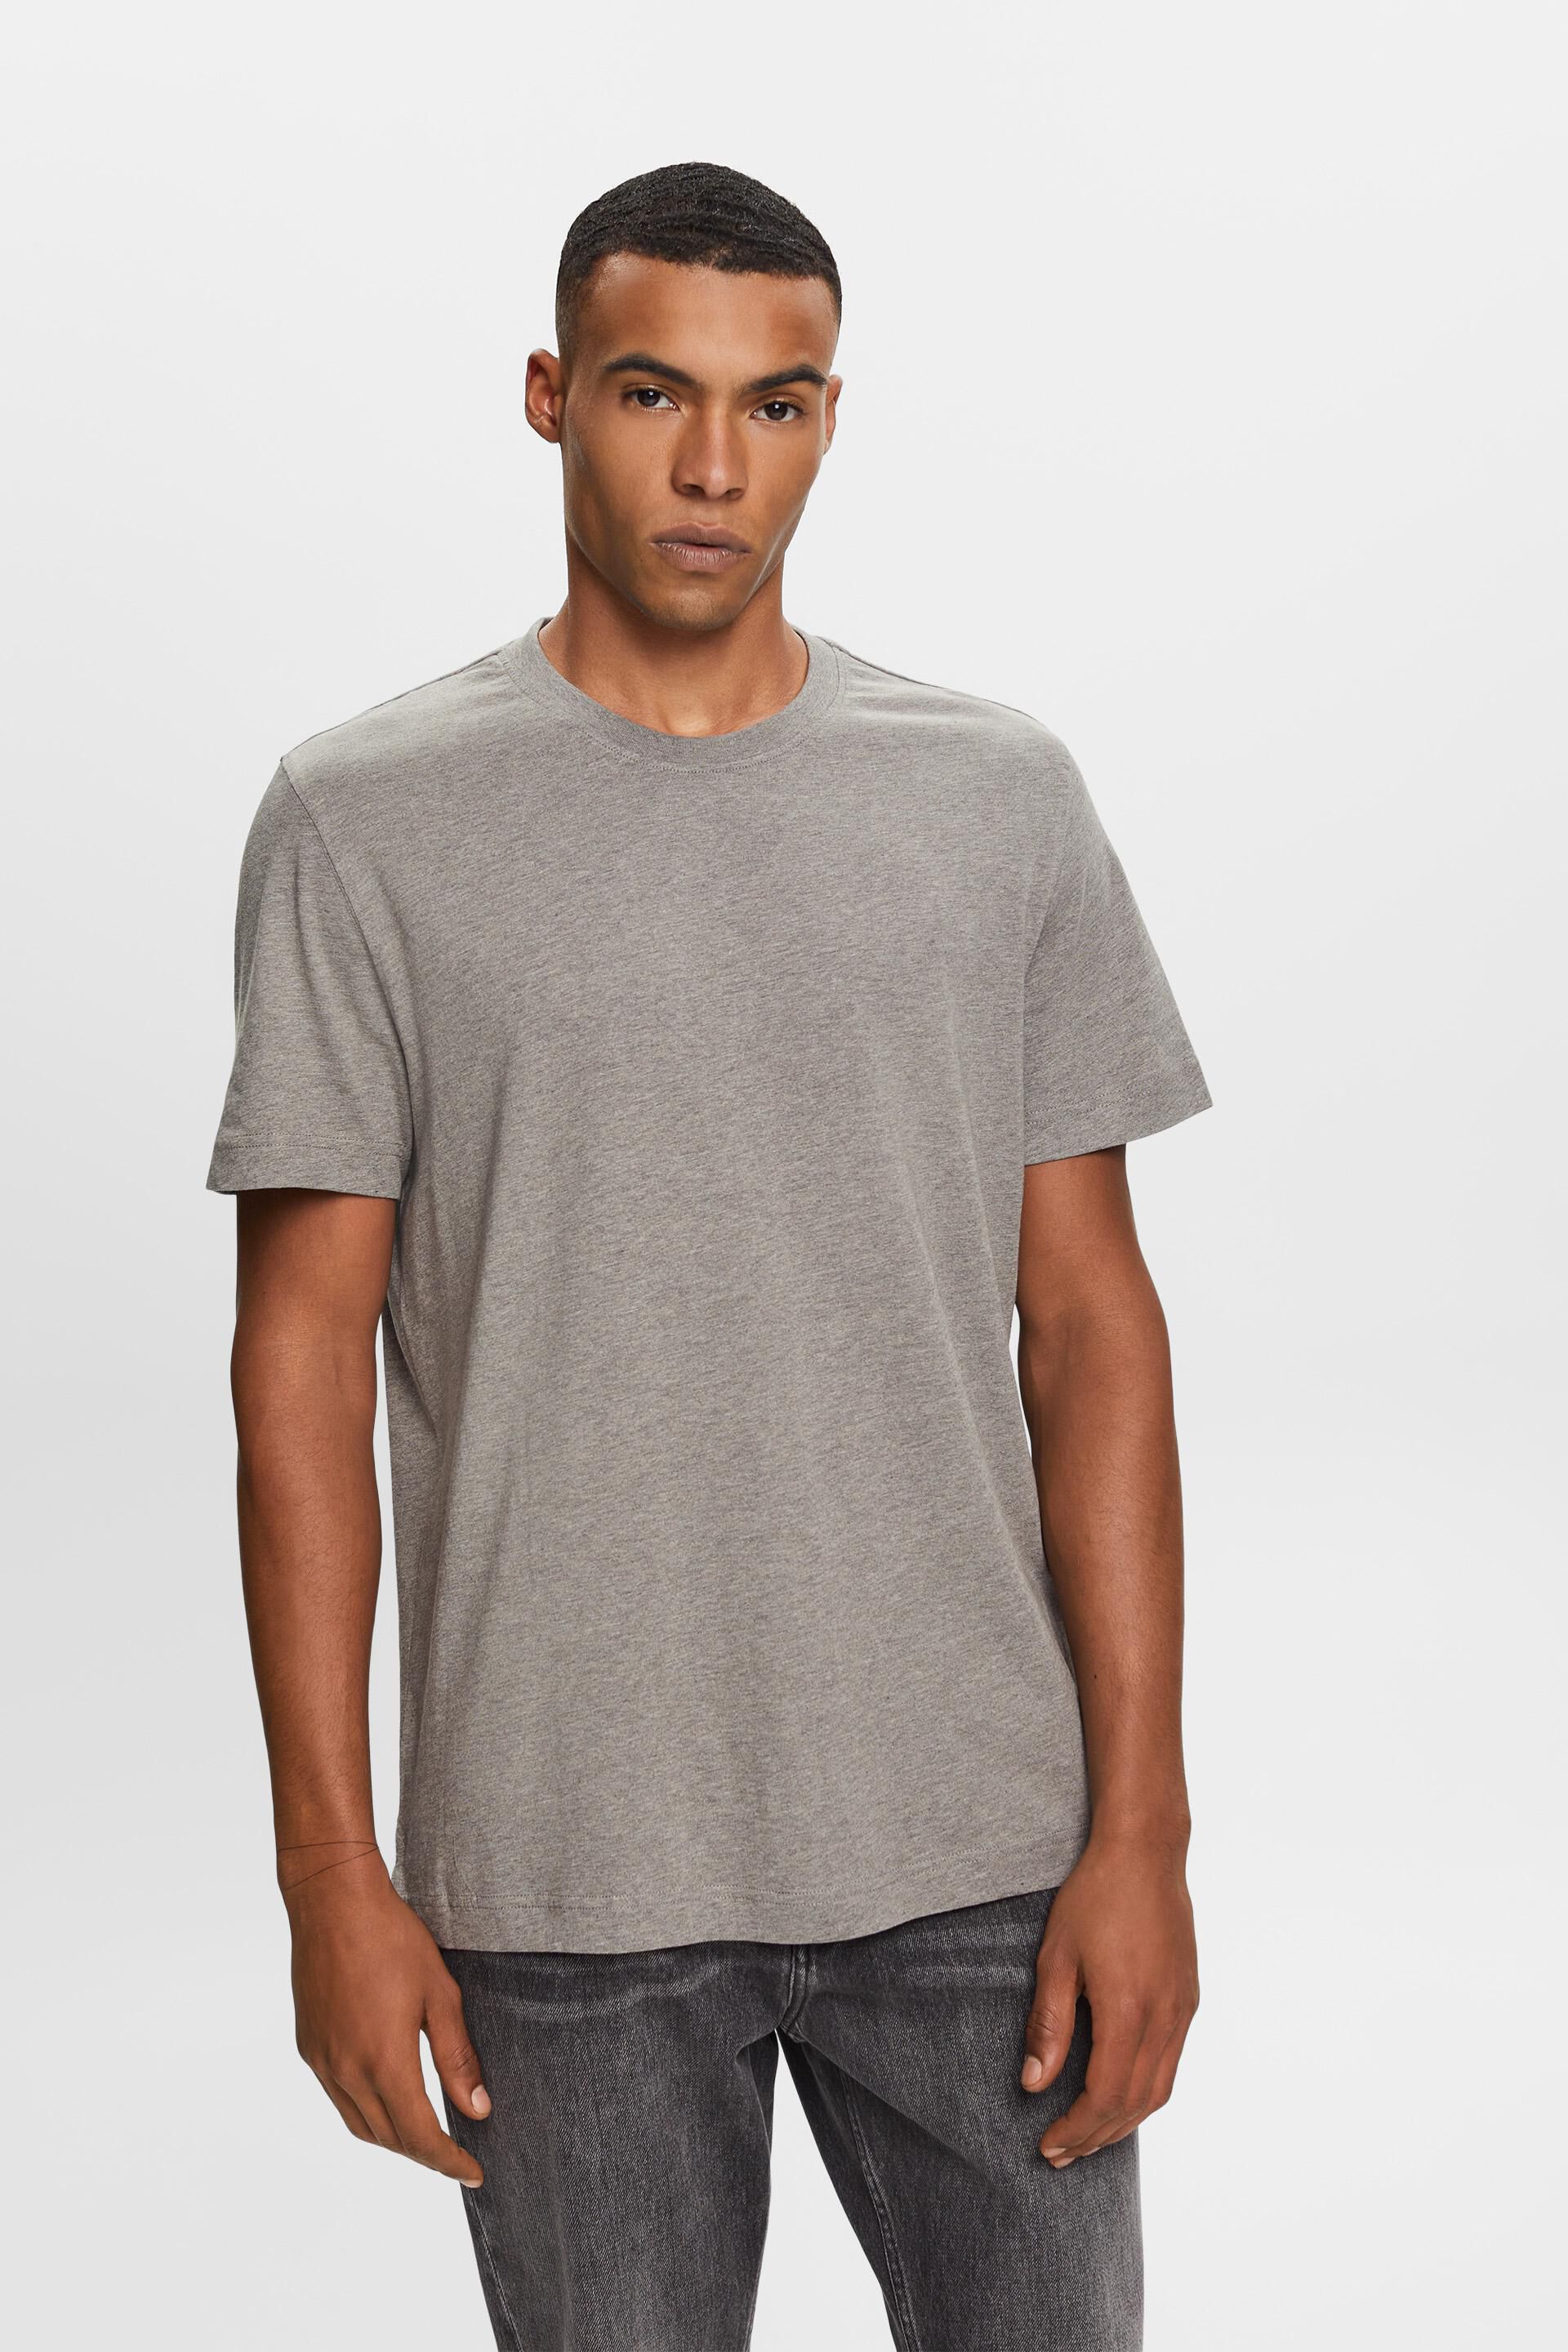 Esprit 100% t-shirt, Crewneck cotton